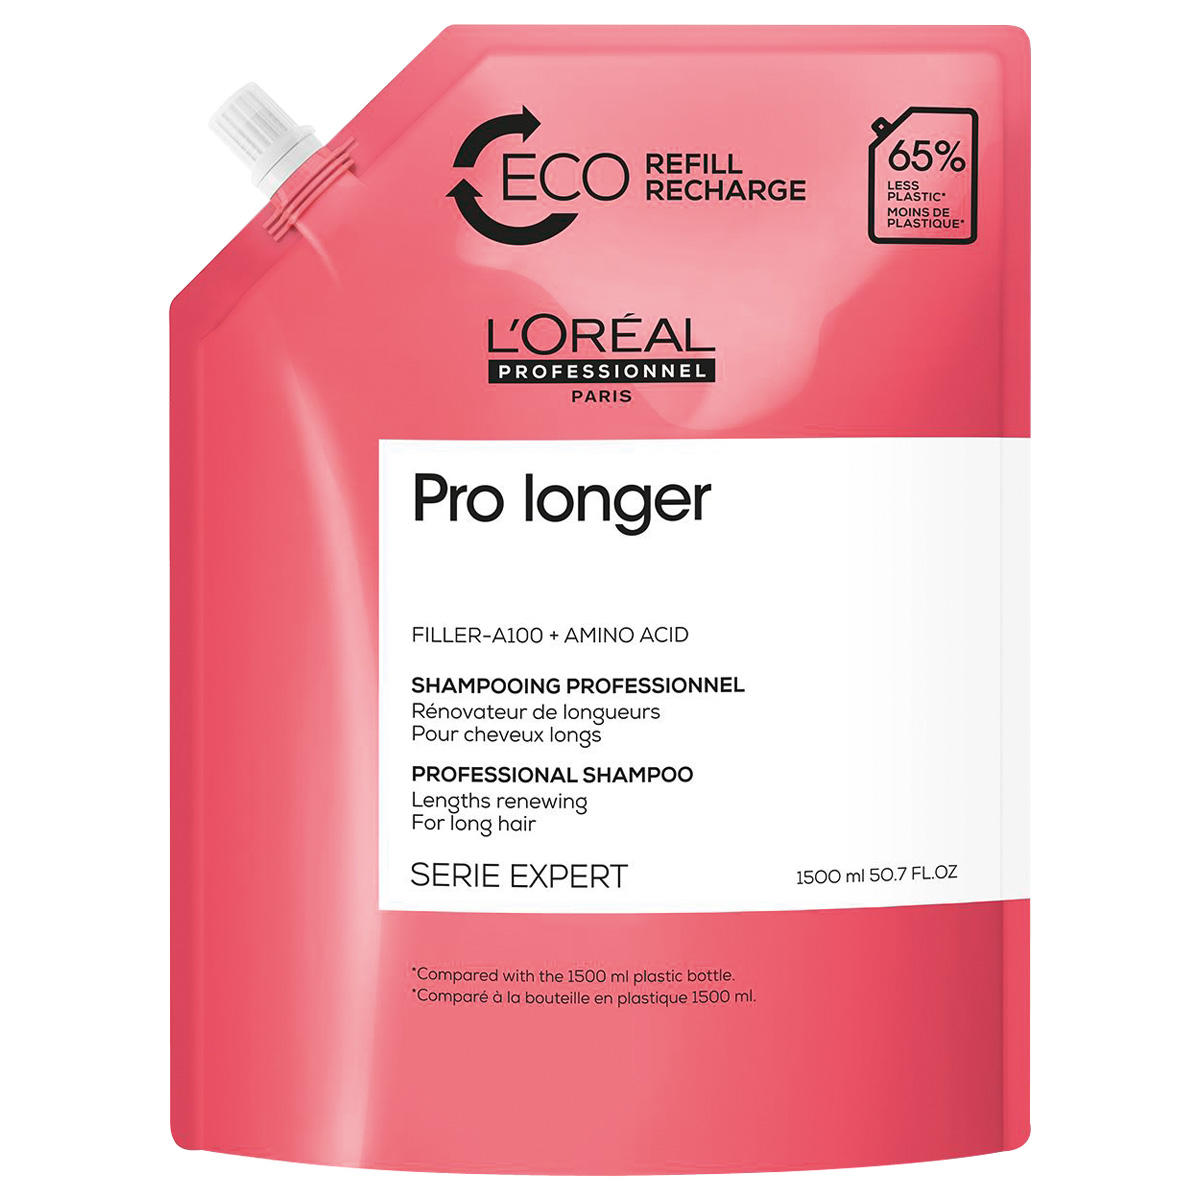 L'Oréal Professionnel Paris Serie Expert Pro Longer Professional Shampoo Refill 1,5 liter - 1